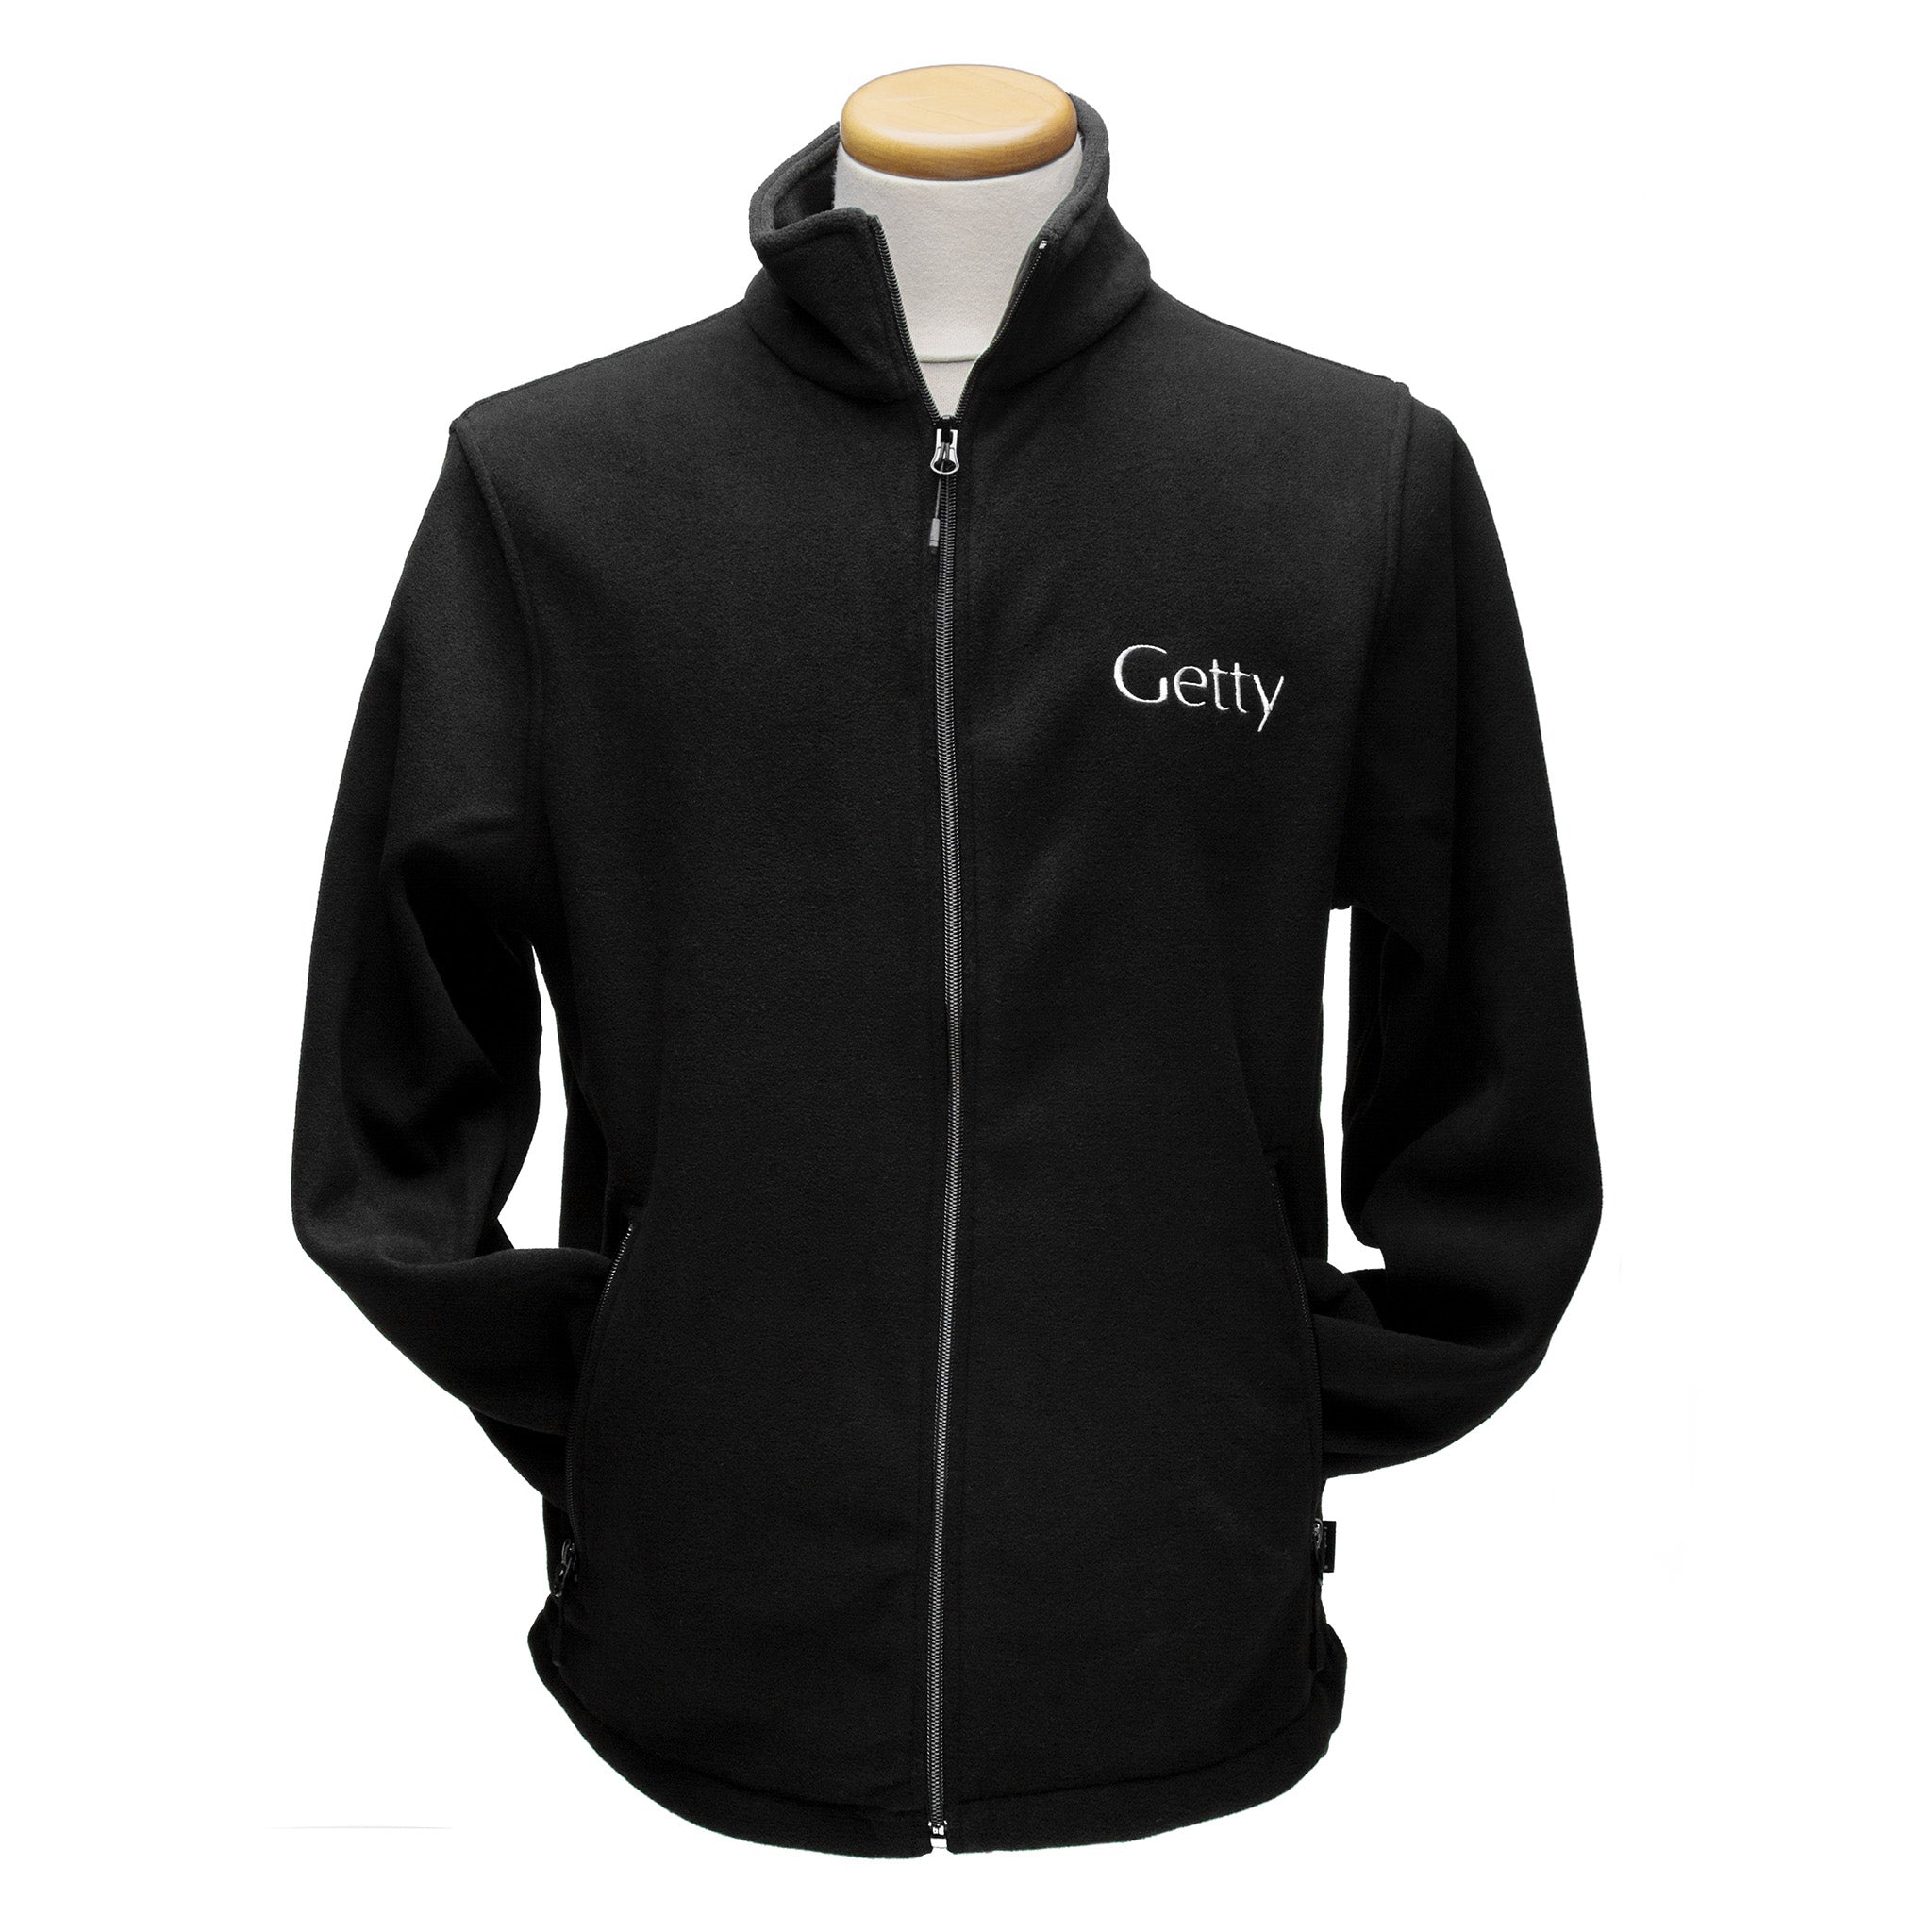 Getty Logo Fleece Jacket - Getty Museum Store